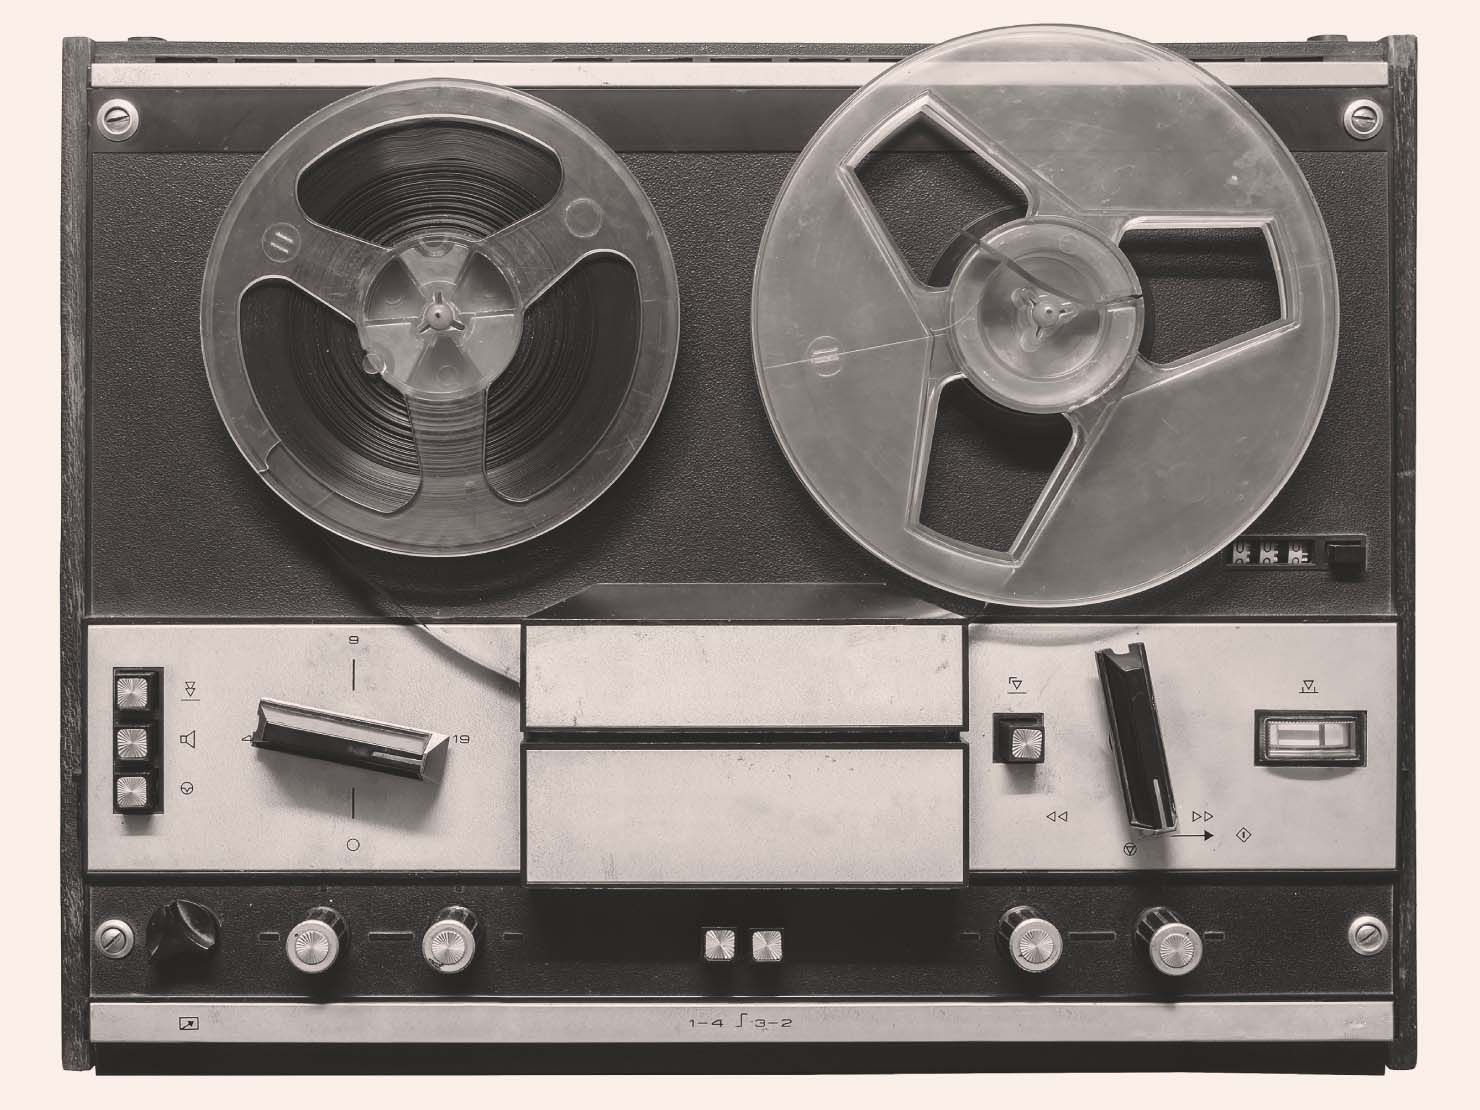 マグネトフォン、後にいうテープレコーダーの原型